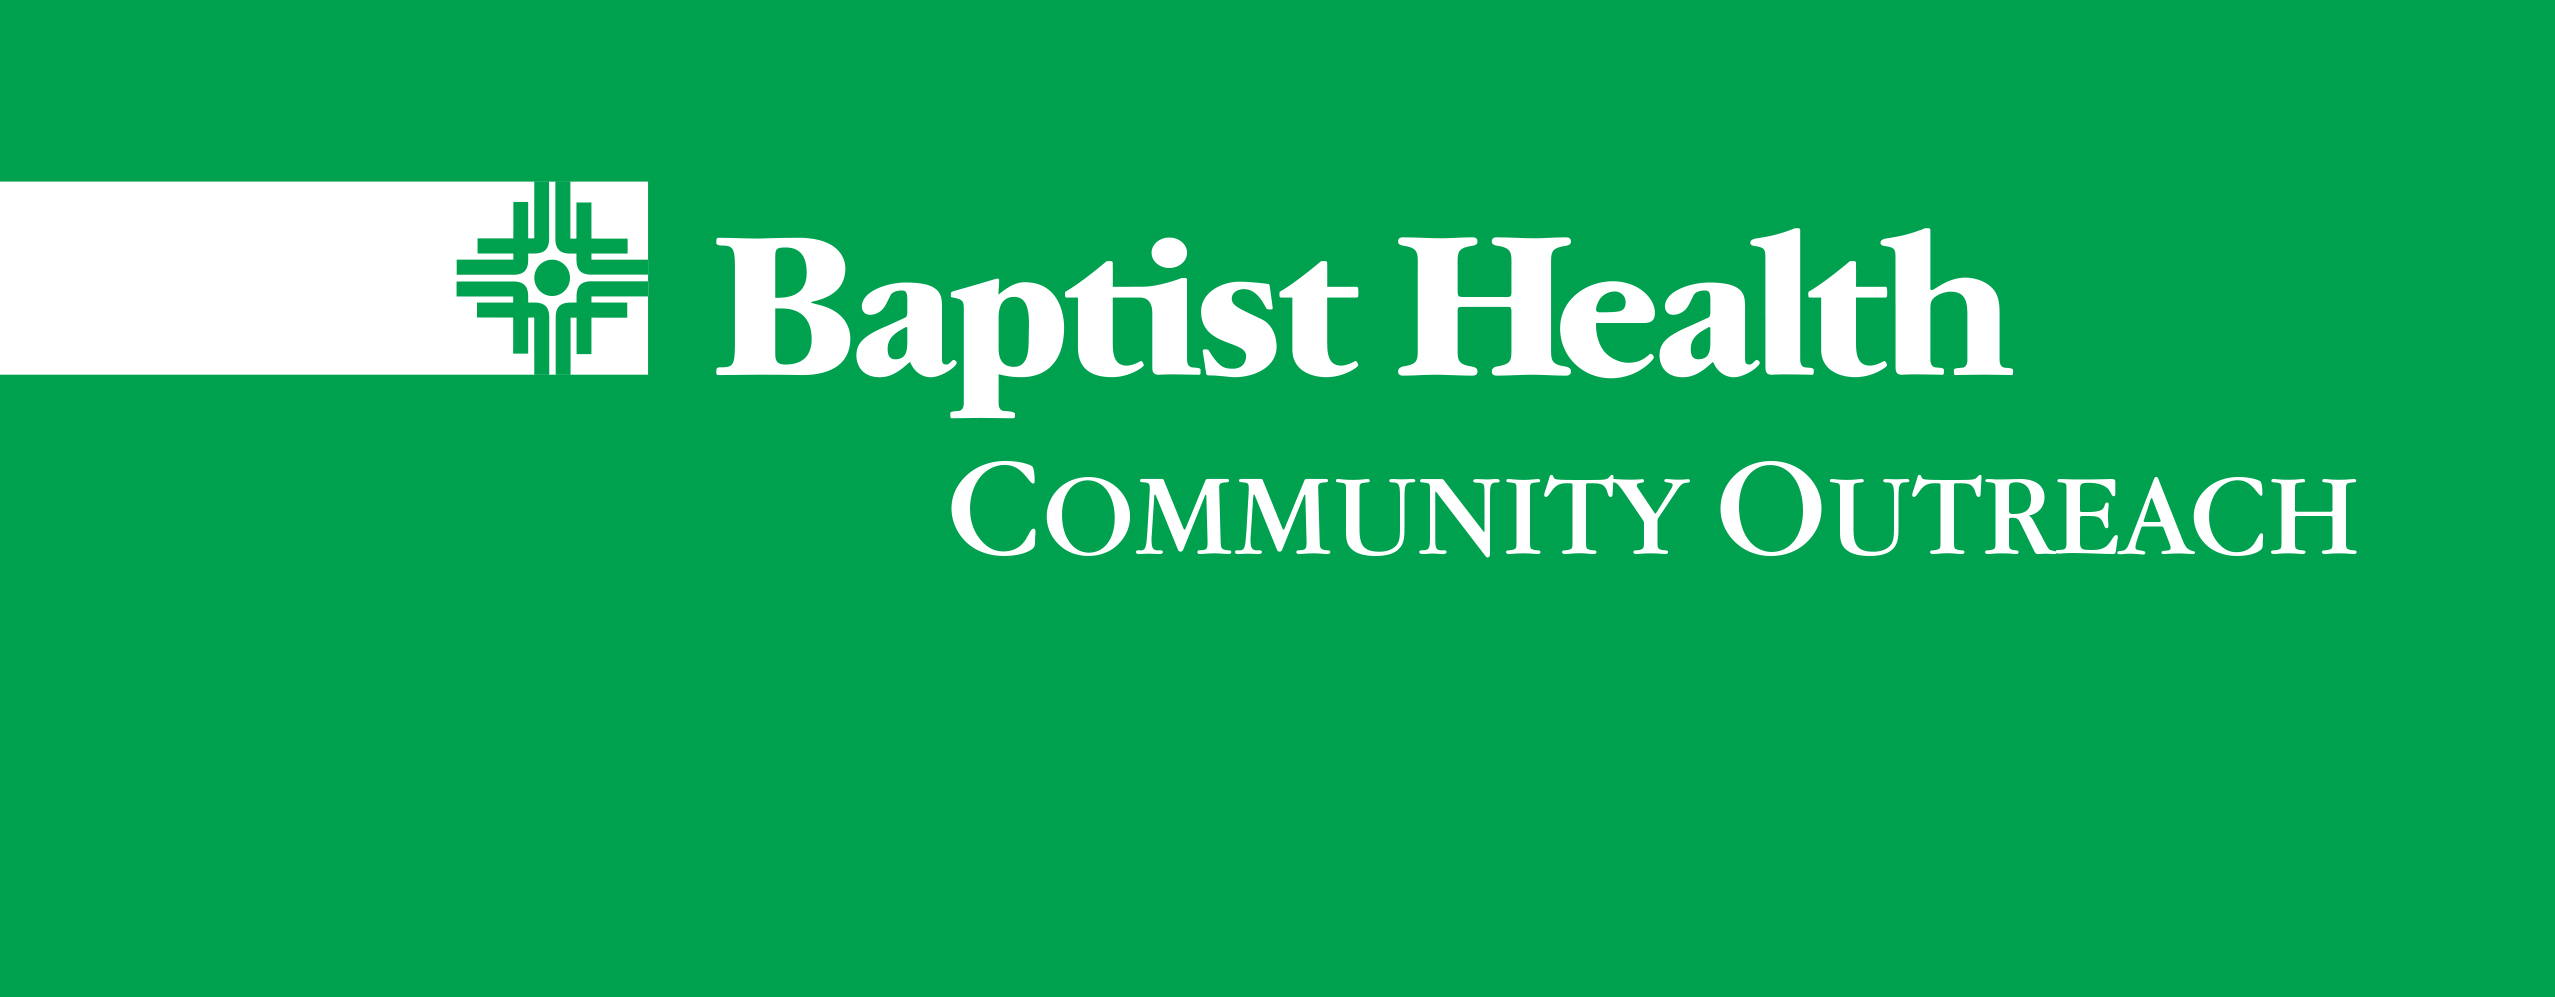 BH Community Outreach Logo on Green